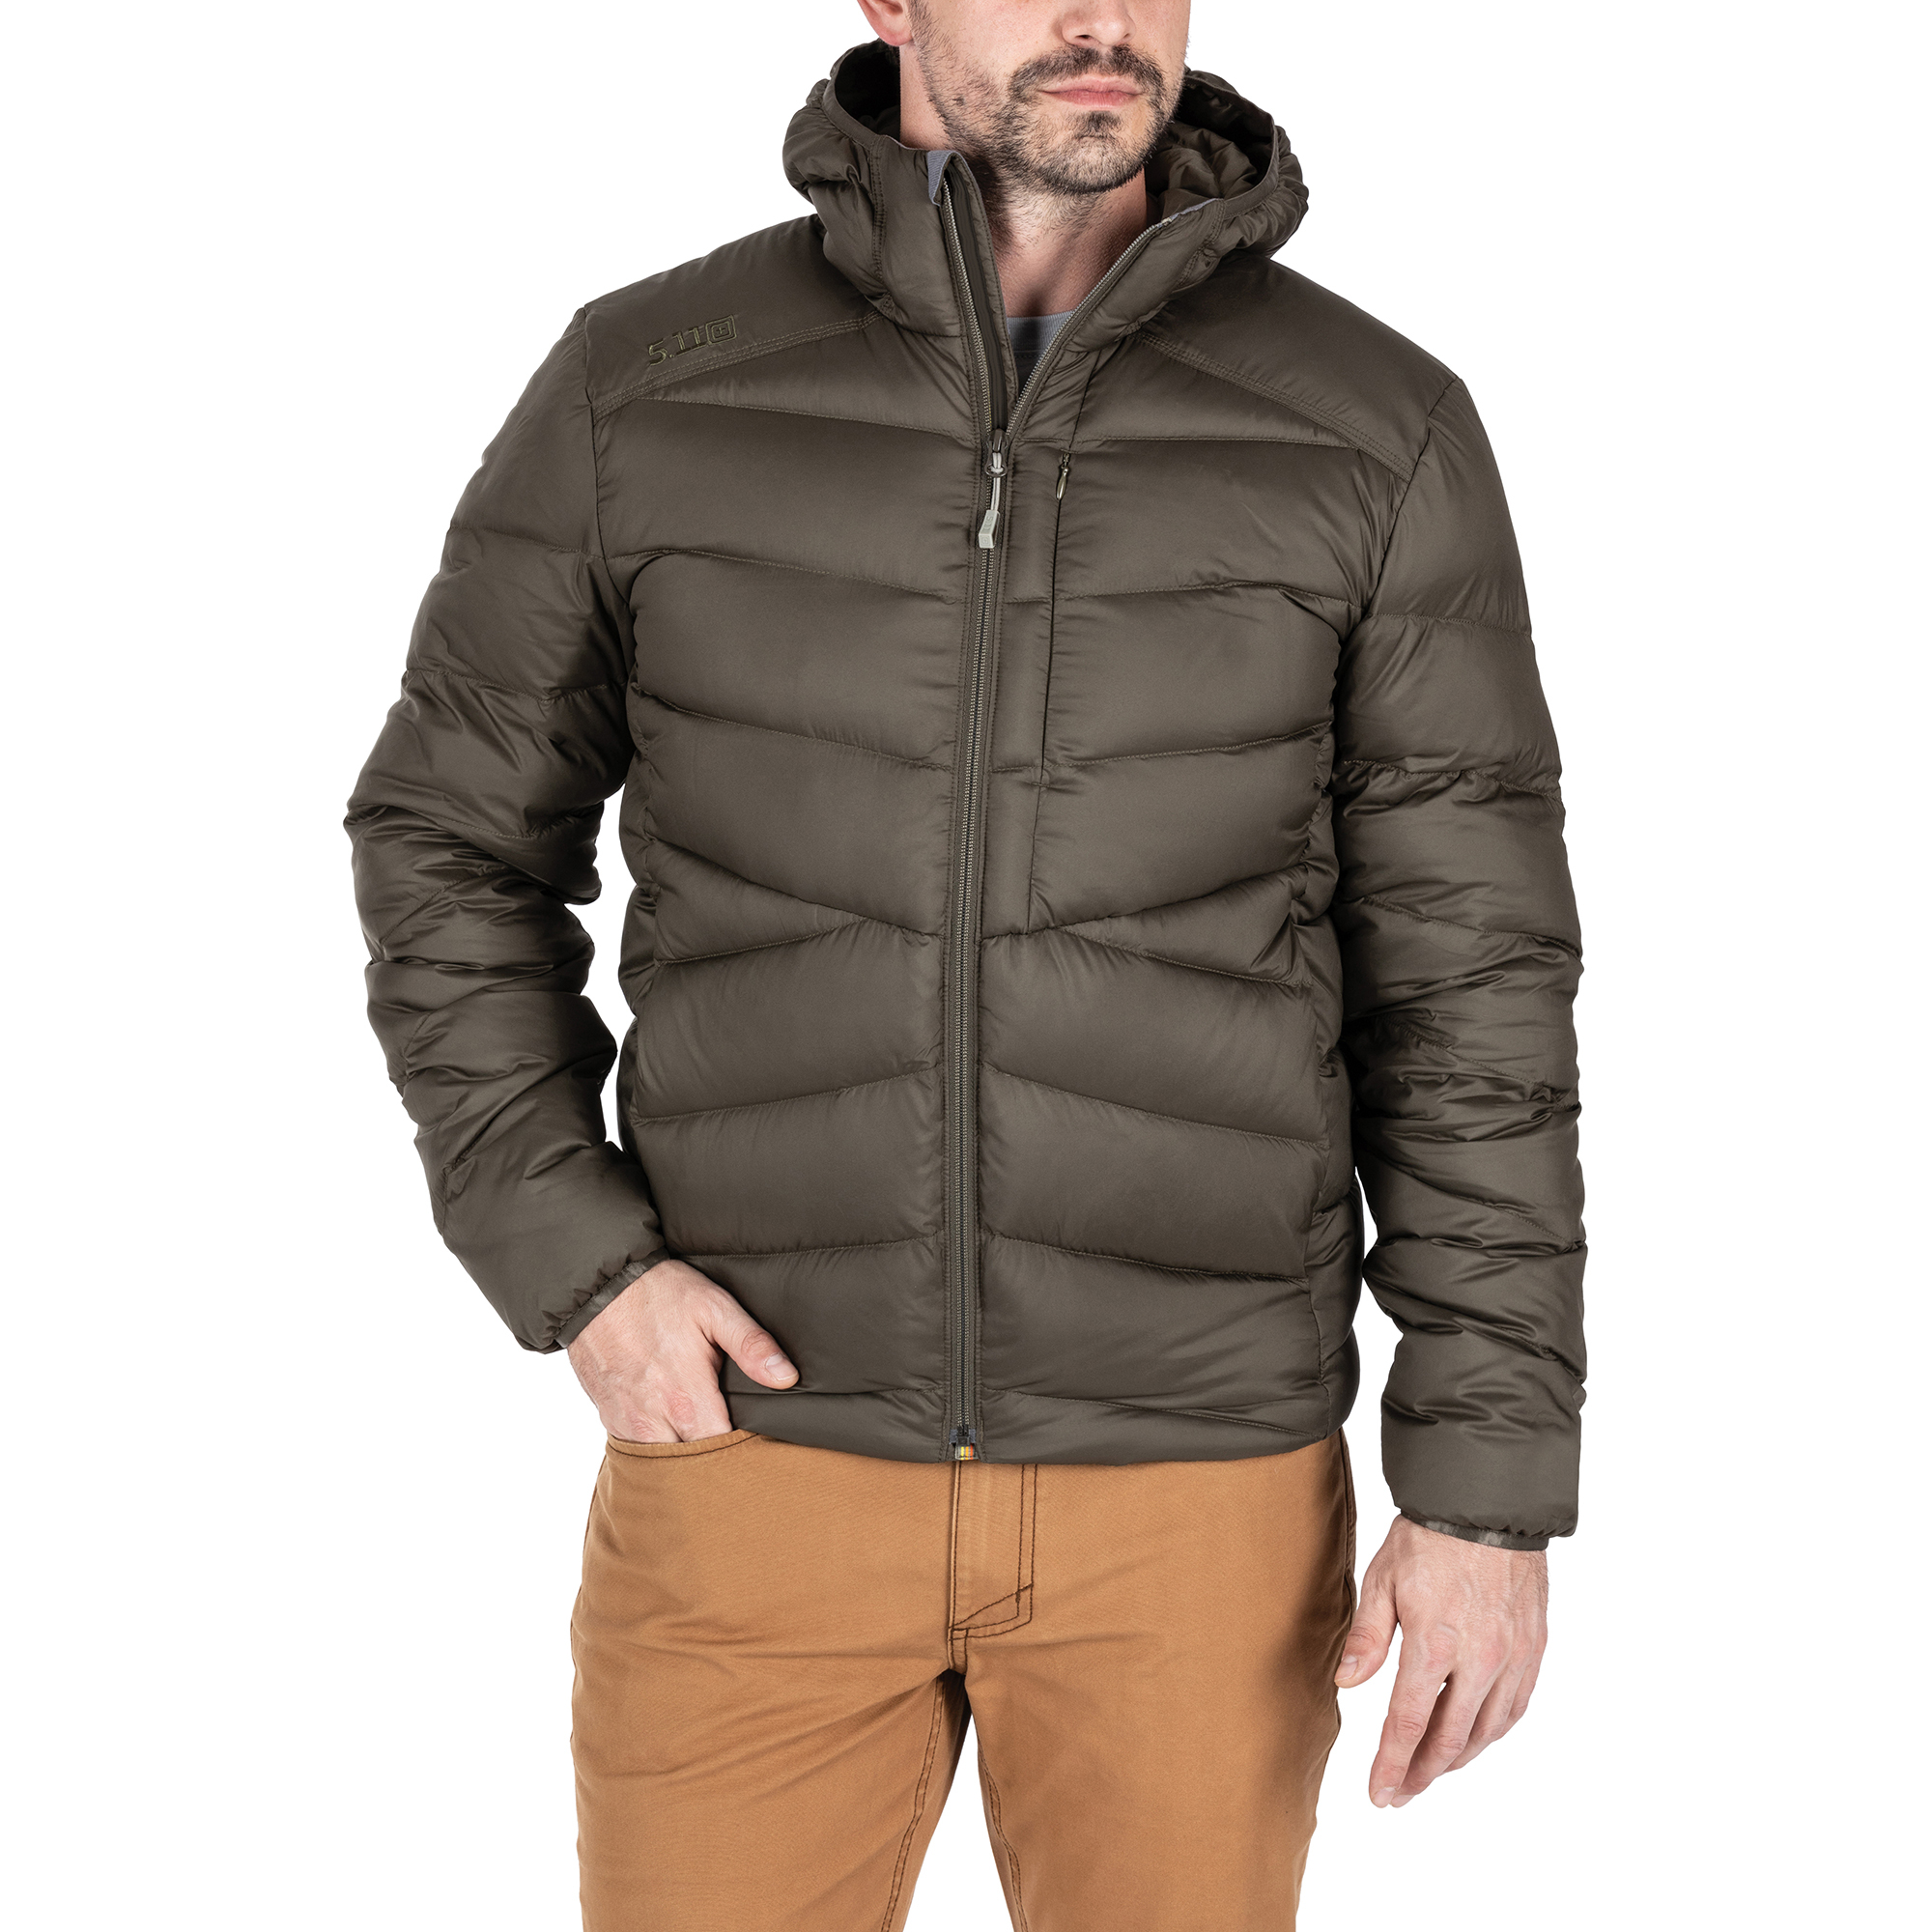 Пуховая куртка Acadia от 5.11 Tactical® на человеке, вид спереди, студийное фото